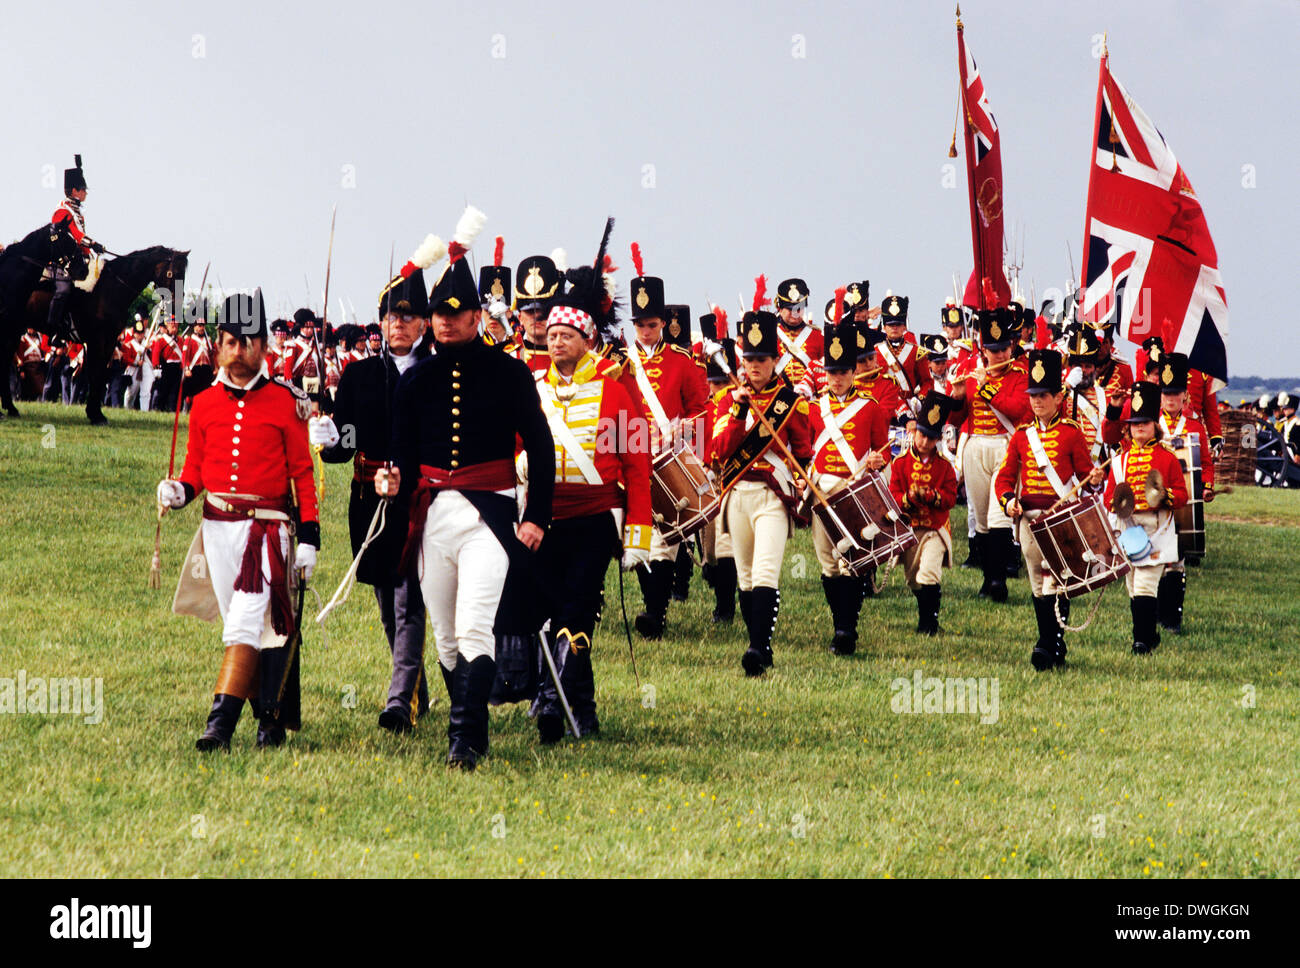 Britische Regiment zur Zeit der Schlacht von Waterloo 1815 marschieren Fußsoldaten, Union Jack Flagge, Reenactment Soldat Armee einheitliche Uniformen England UK Stockfoto